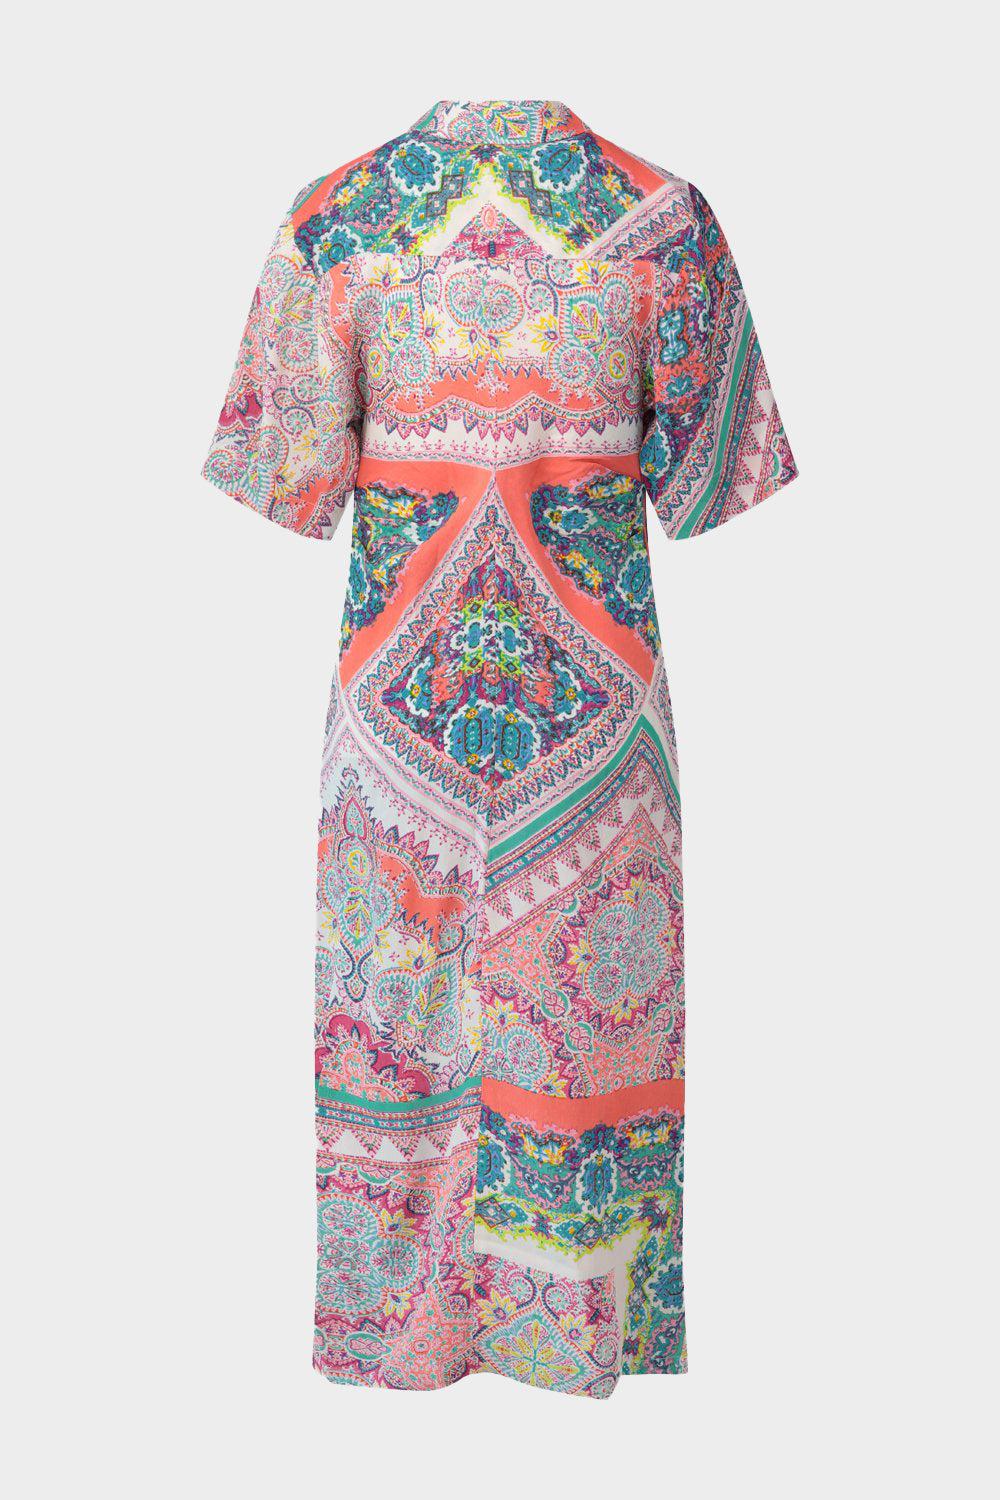 שמלת STANISLAS לנשים הדפס אסטר פרחוני RENE DERHY Vendome online | ונדום .